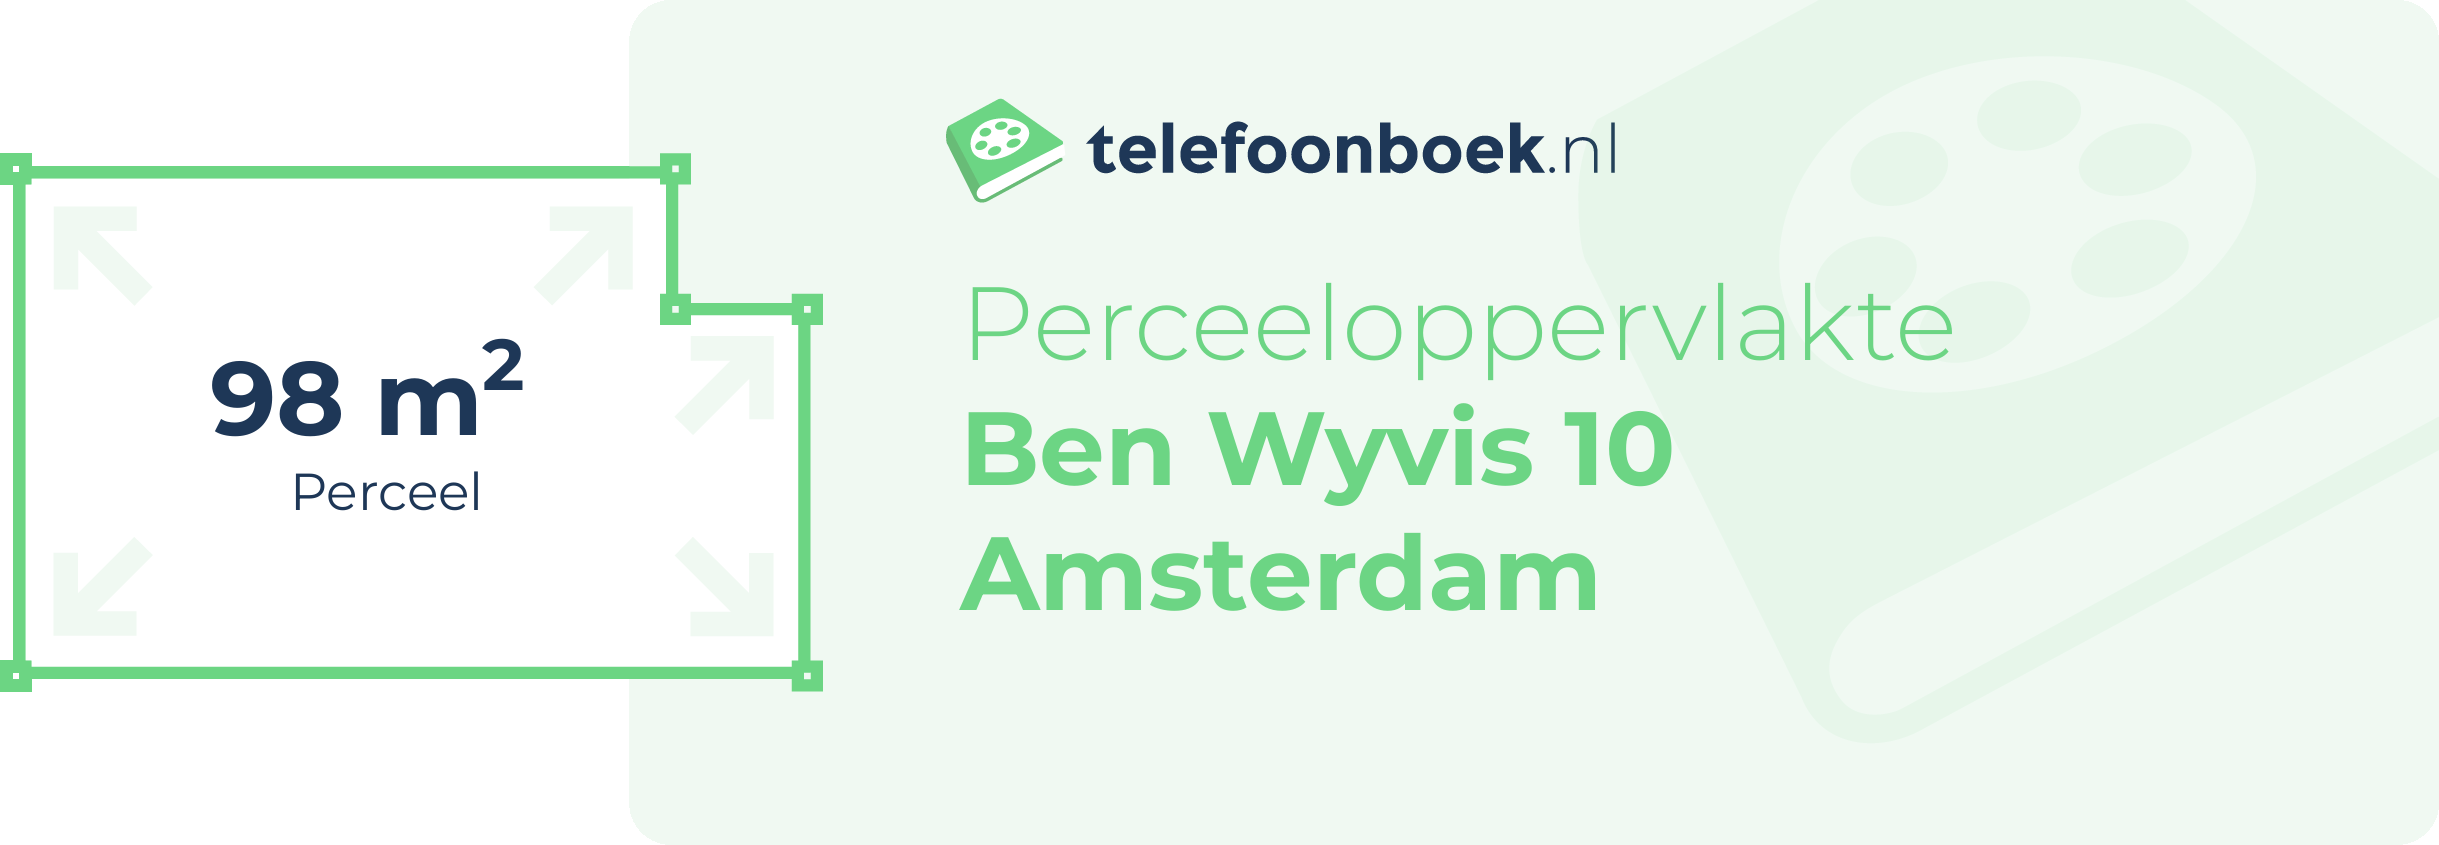 Perceeloppervlakte Ben Wyvis 10 Amsterdam